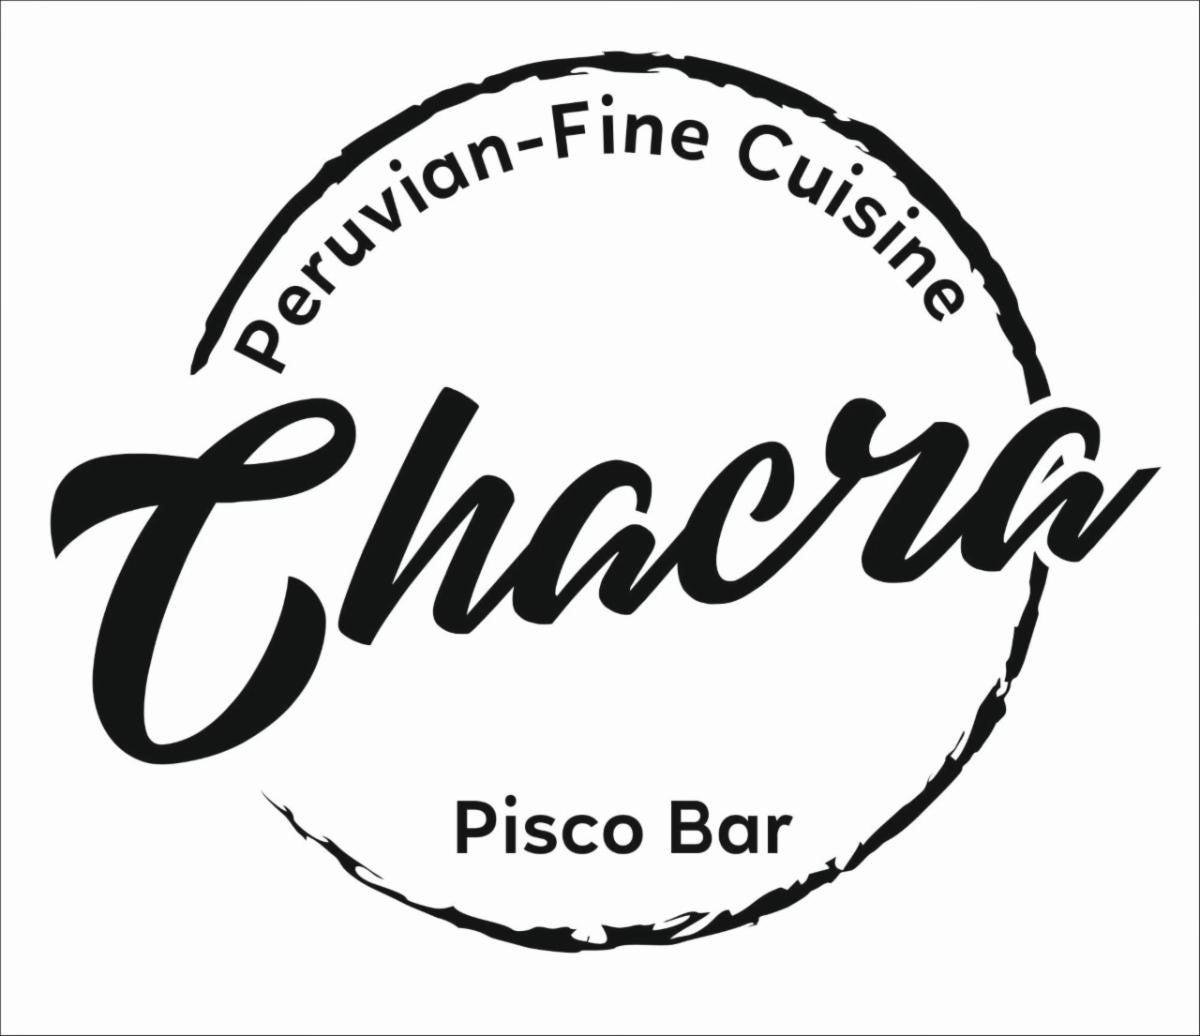 Chacra Pisco Bar